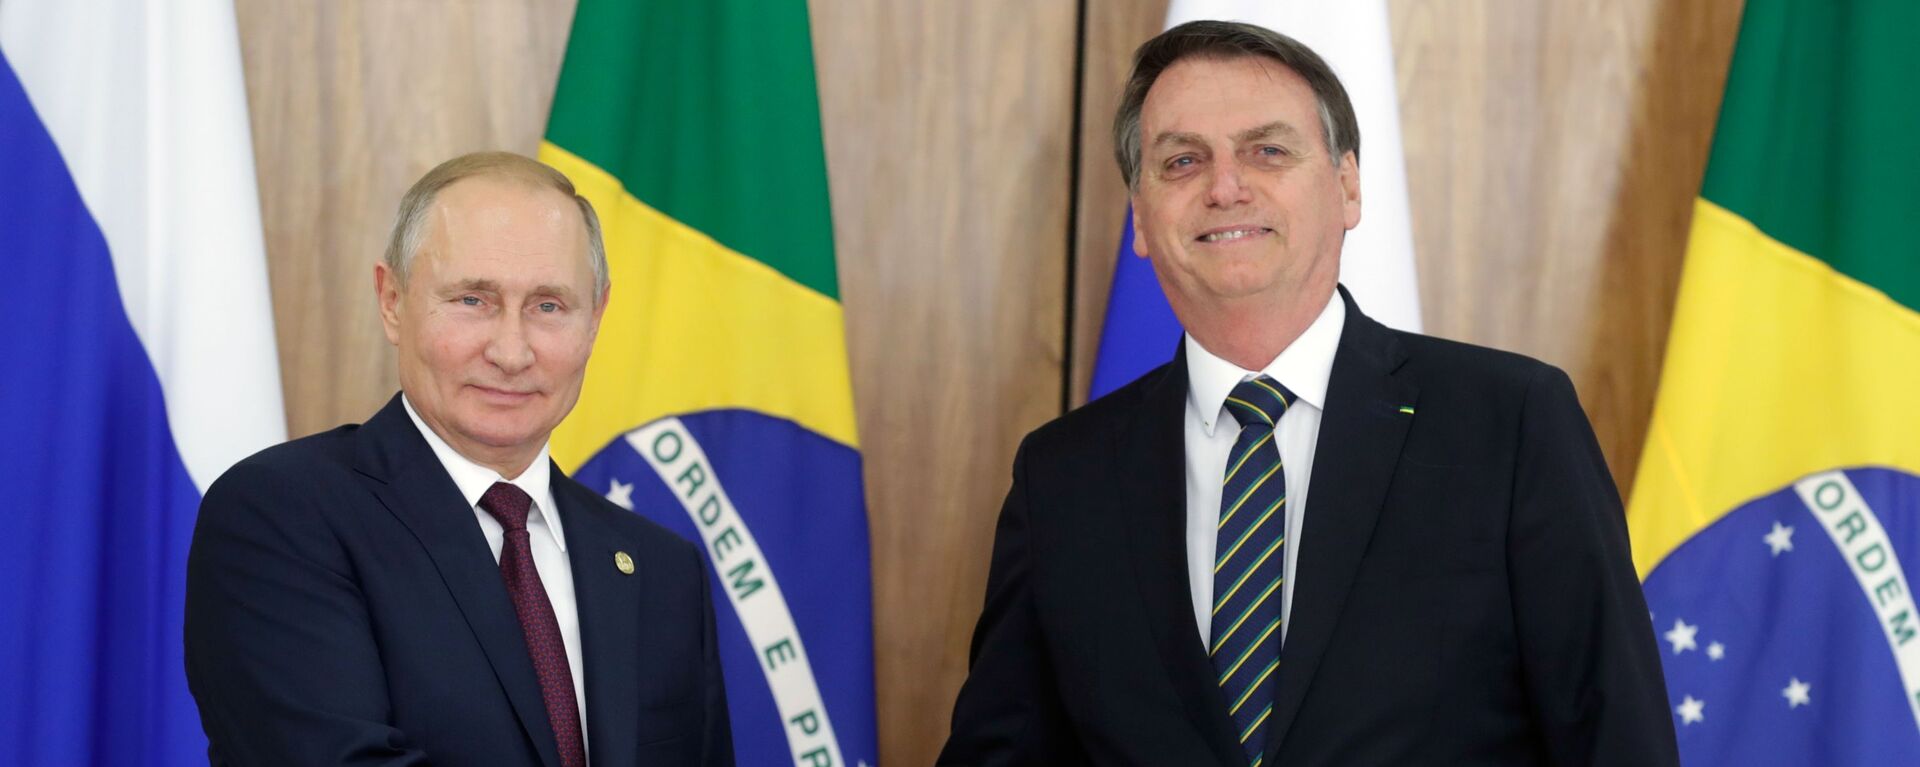 Presidente russo, Vladimir Putin, com o presidente brasileiro, Jair Bolsonaro, durante uma reunião no Palácio do Planalto, em 14 de novembro de 2019 (foto de arquivo) - Sputnik Brasil, 1920, 27.06.2022